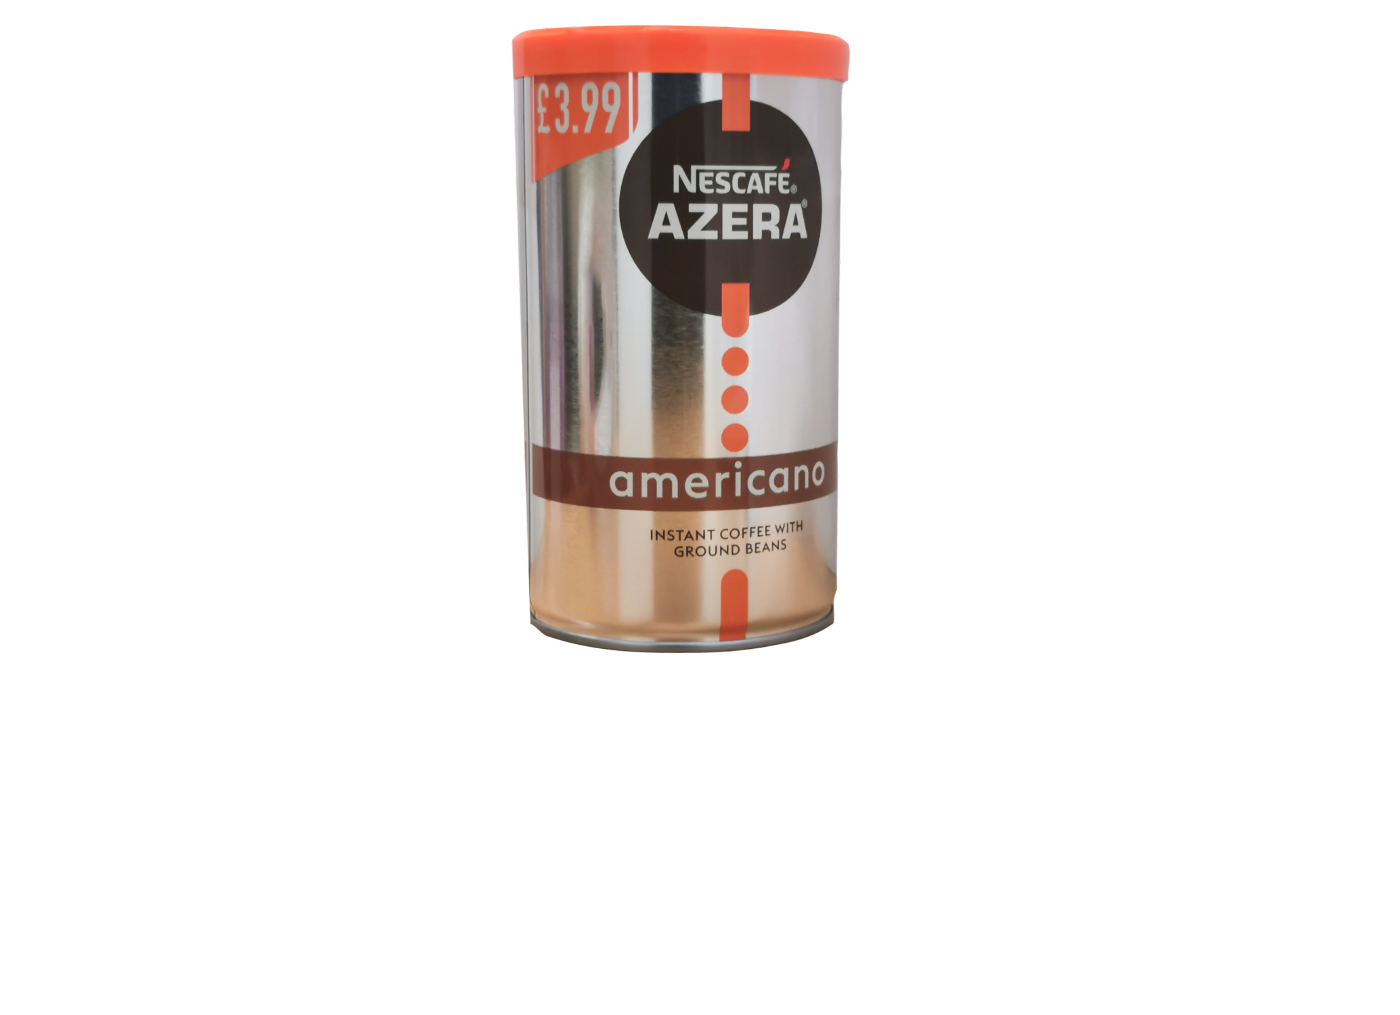 Nescafe Azera Americano (Instant)